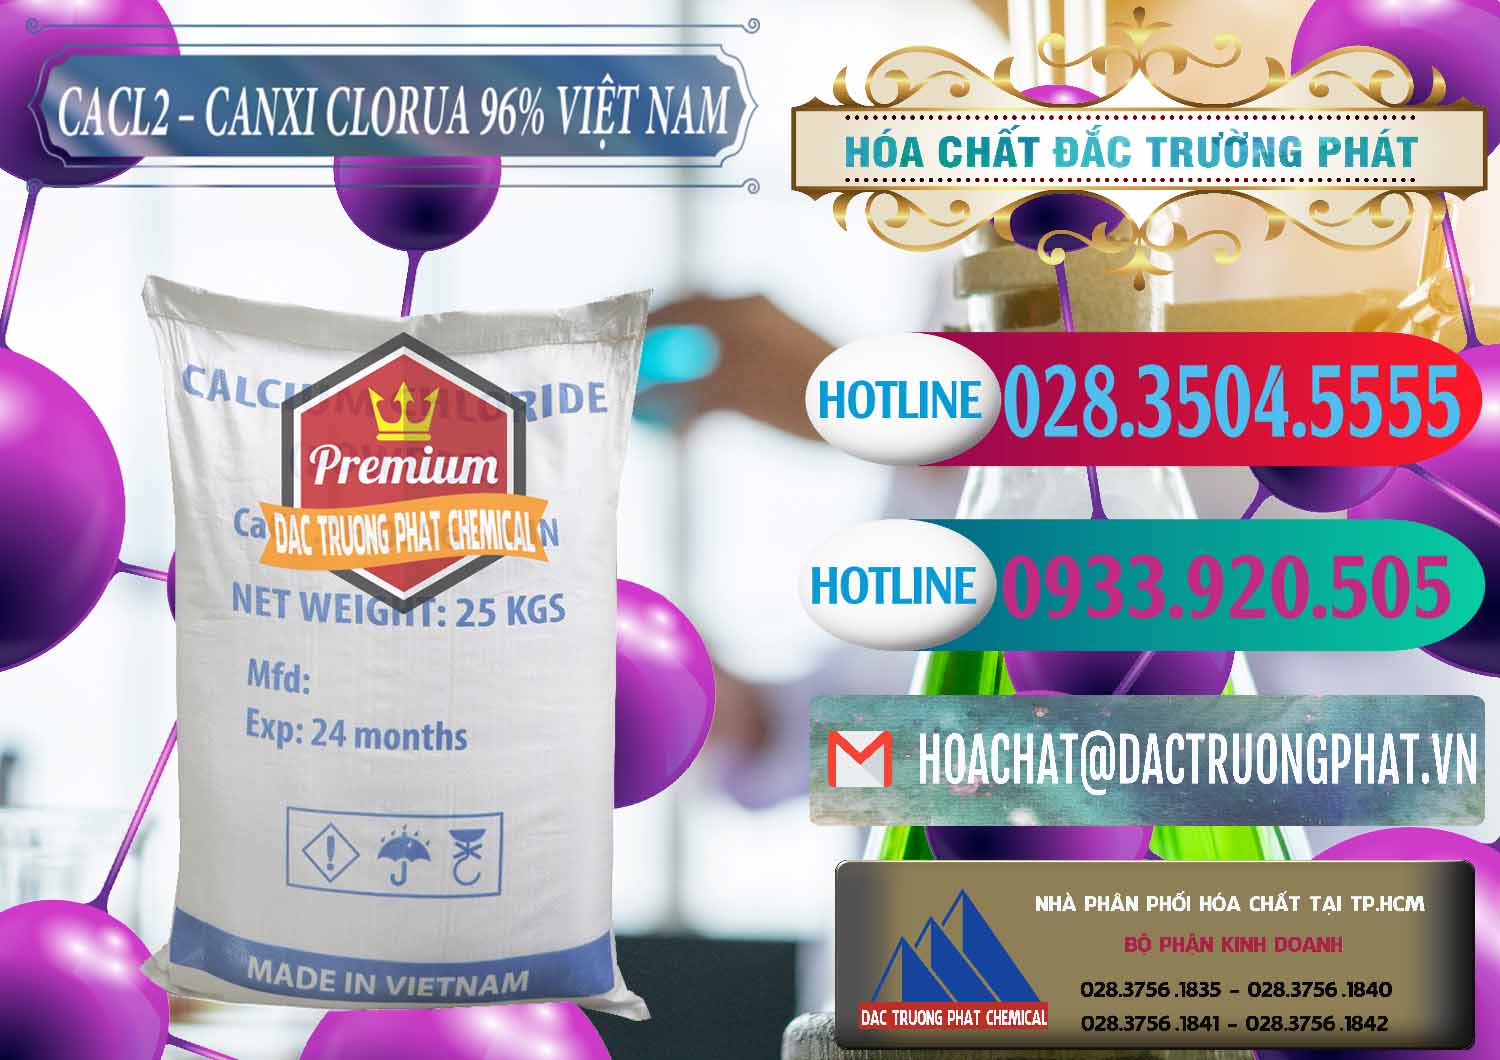 Chuyên phân phối & kinh doanh CaCl2 – Canxi Clorua 96% Việt Nam - 0236 - Nhà cung ứng ( phân phối ) hóa chất tại TP.HCM - truongphat.vn